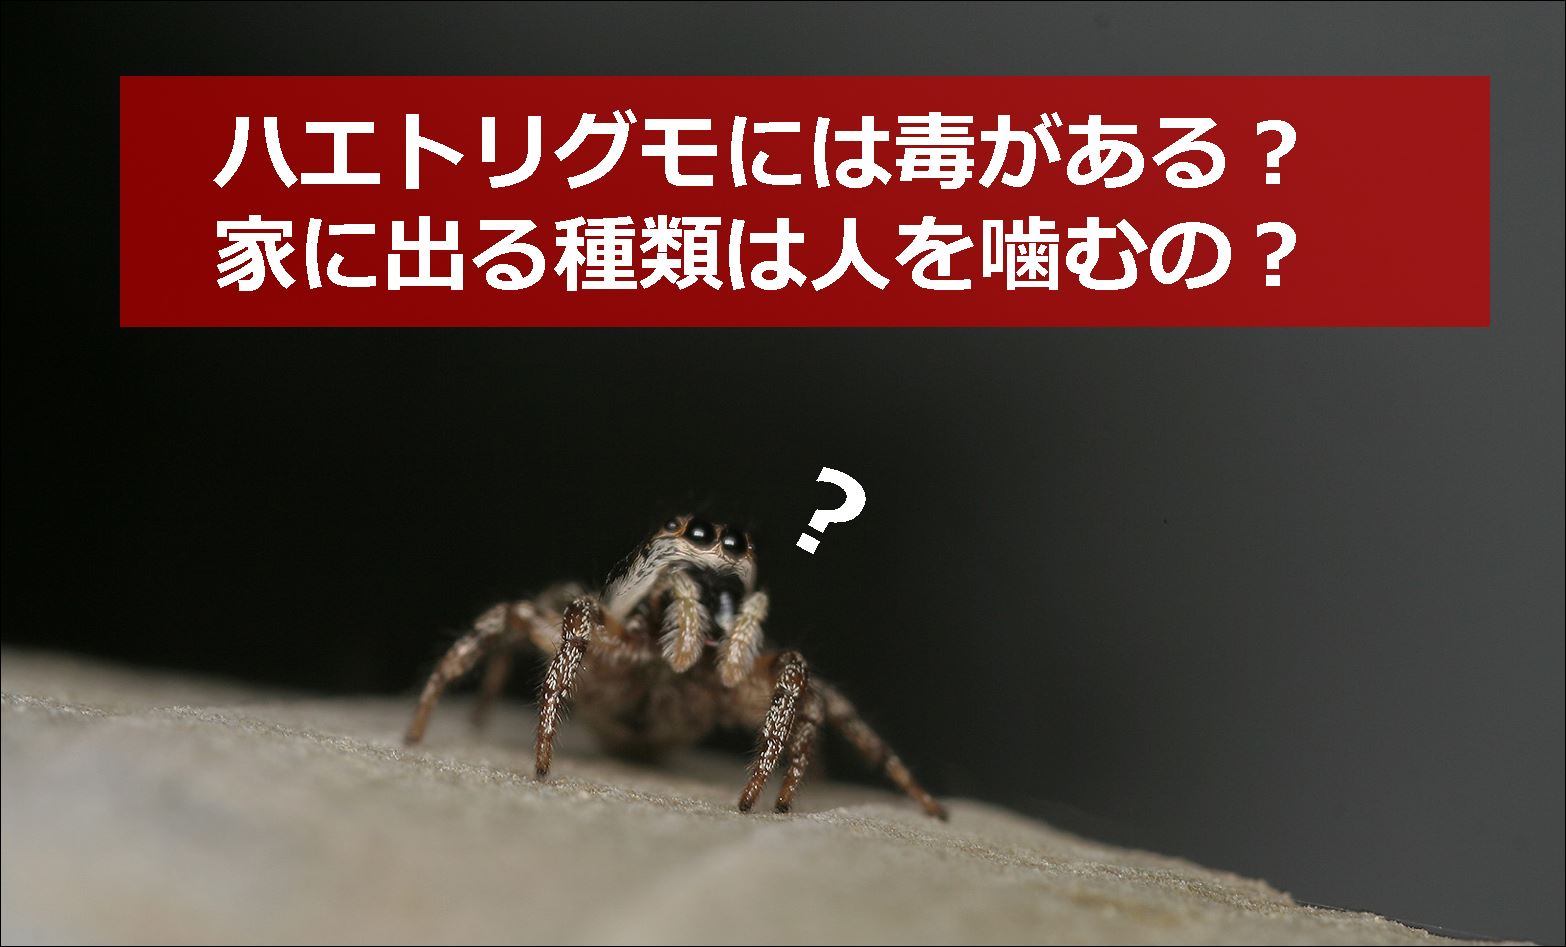 ハエトリグモには毒がある 家の中に出る種類は人を噛むの 生物モラトリアム